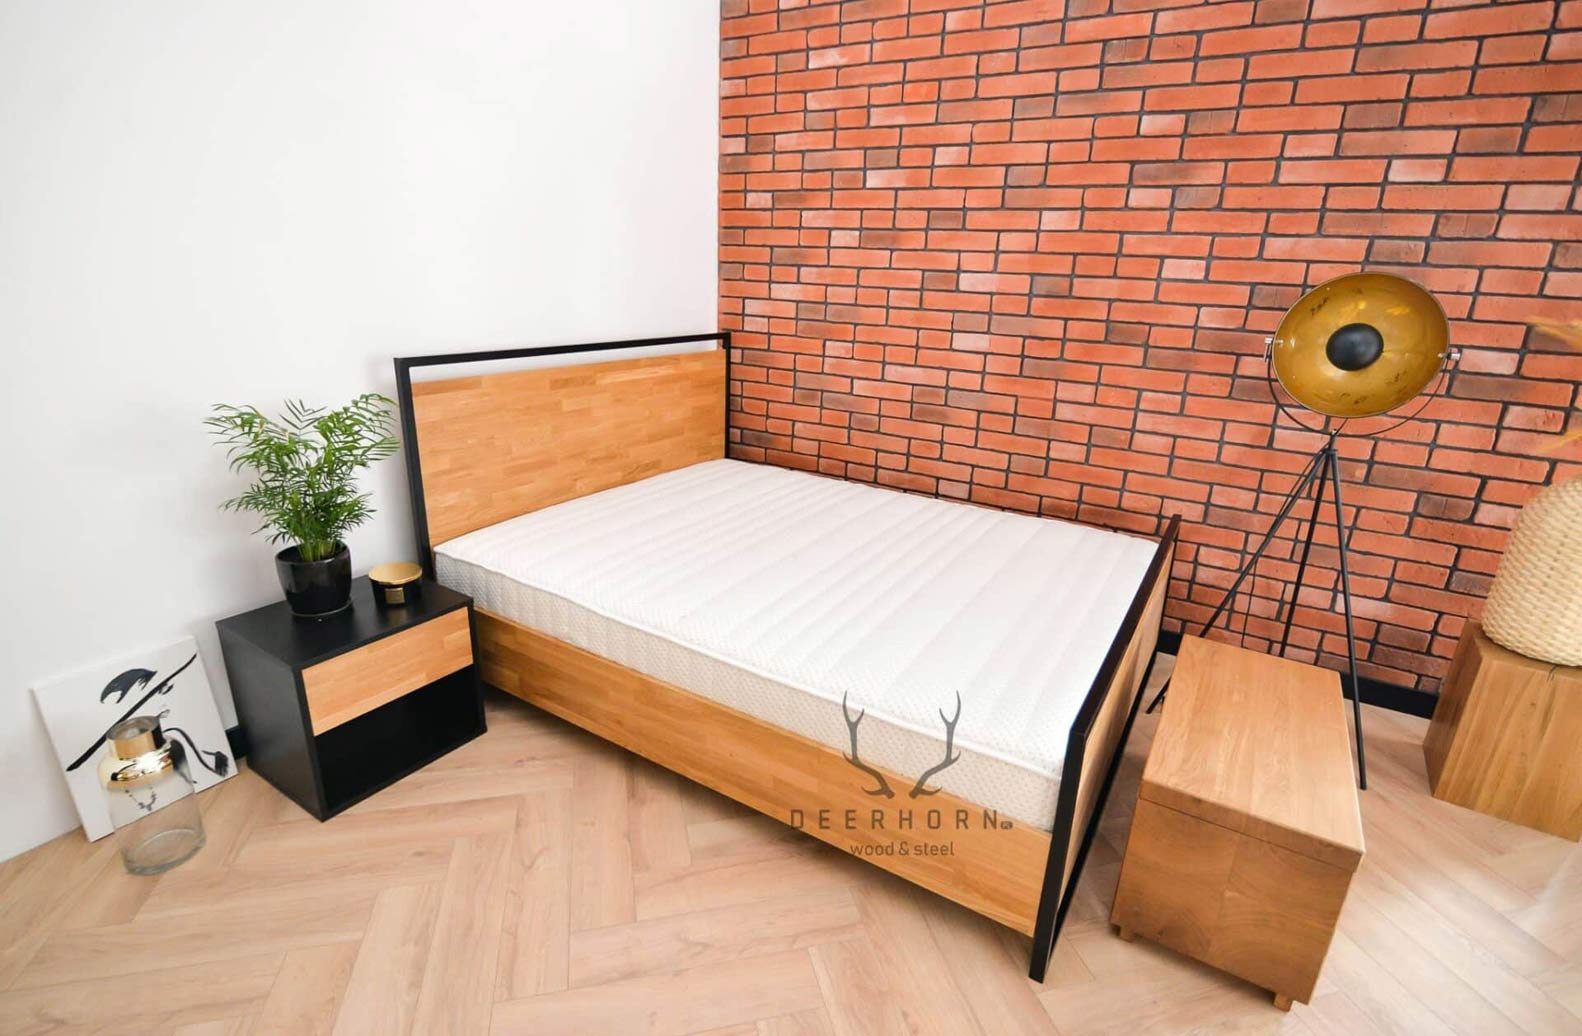 łóżko z drewna i metalu